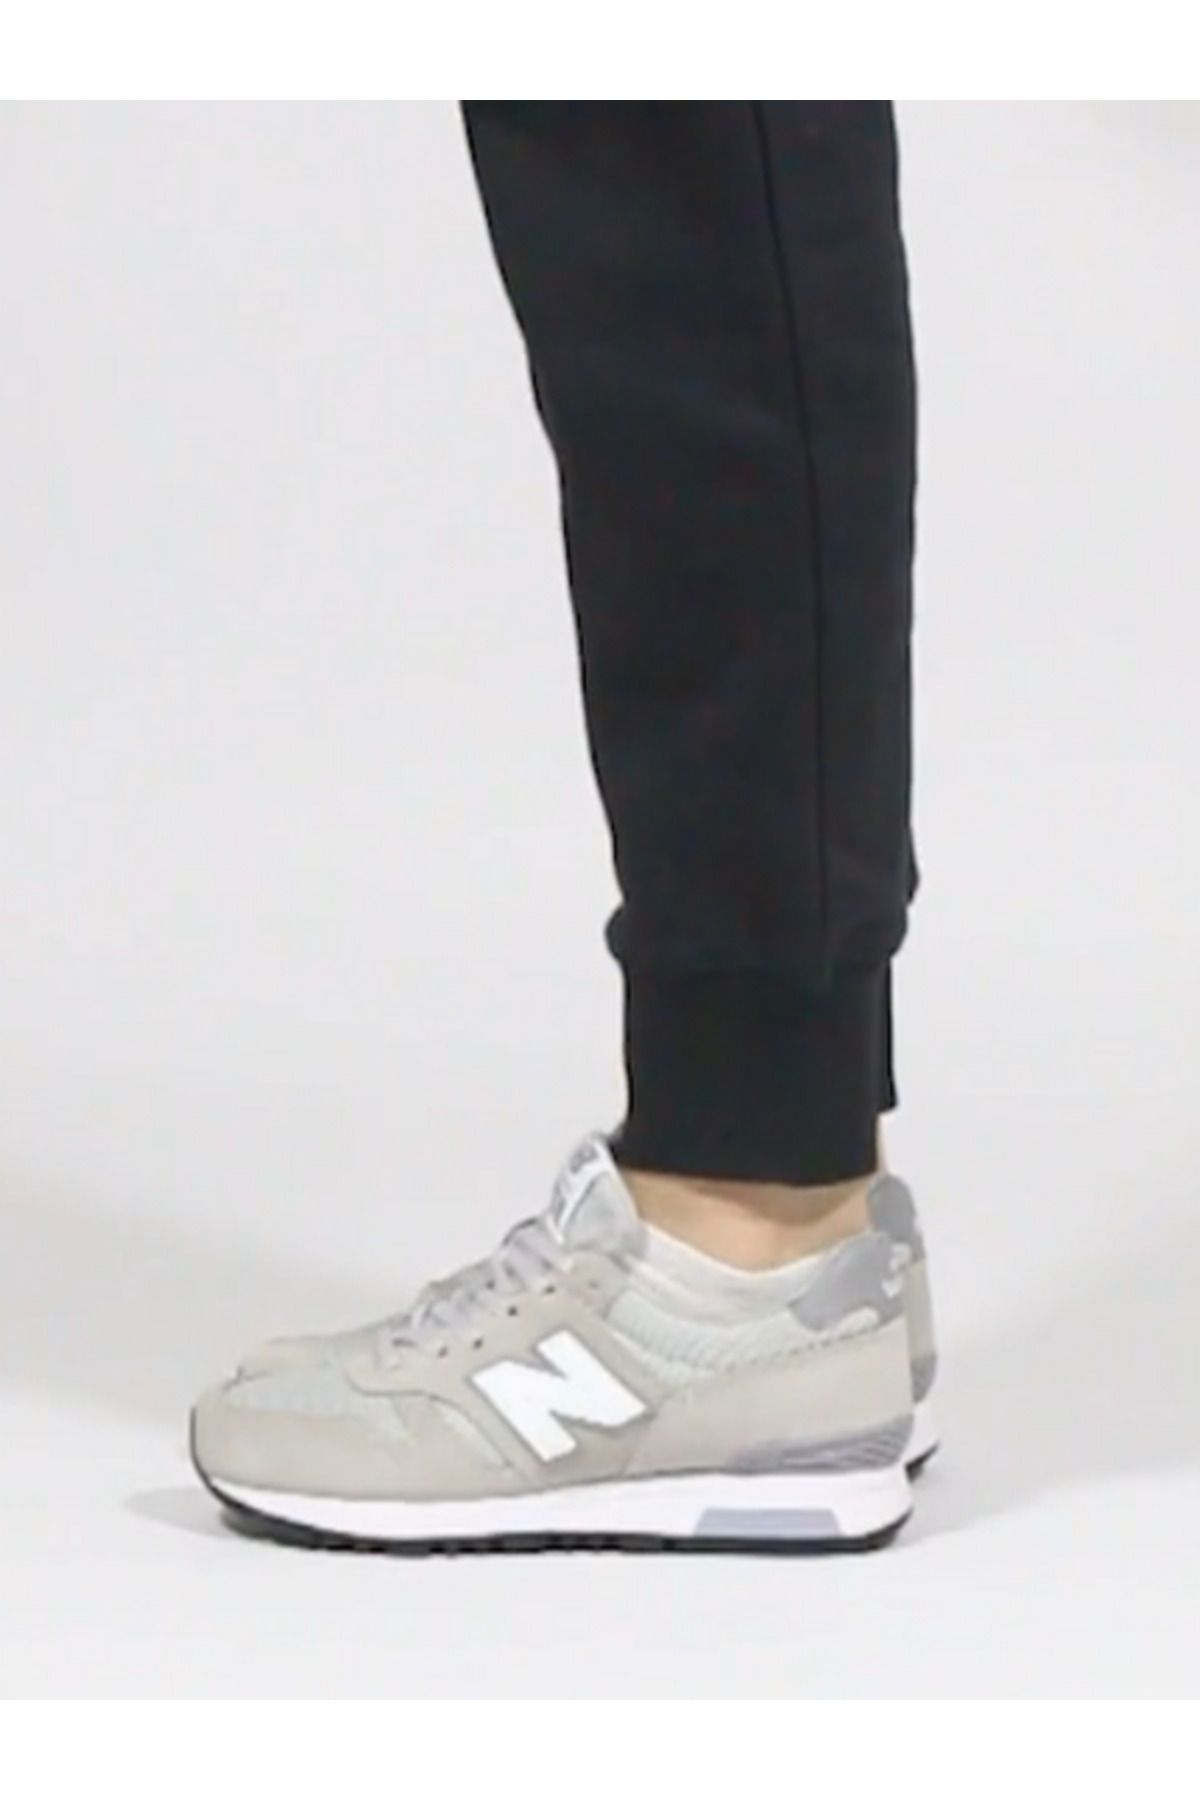 New Balance Wl565 Gri Kadın Sneaker Spor Ayakkabı